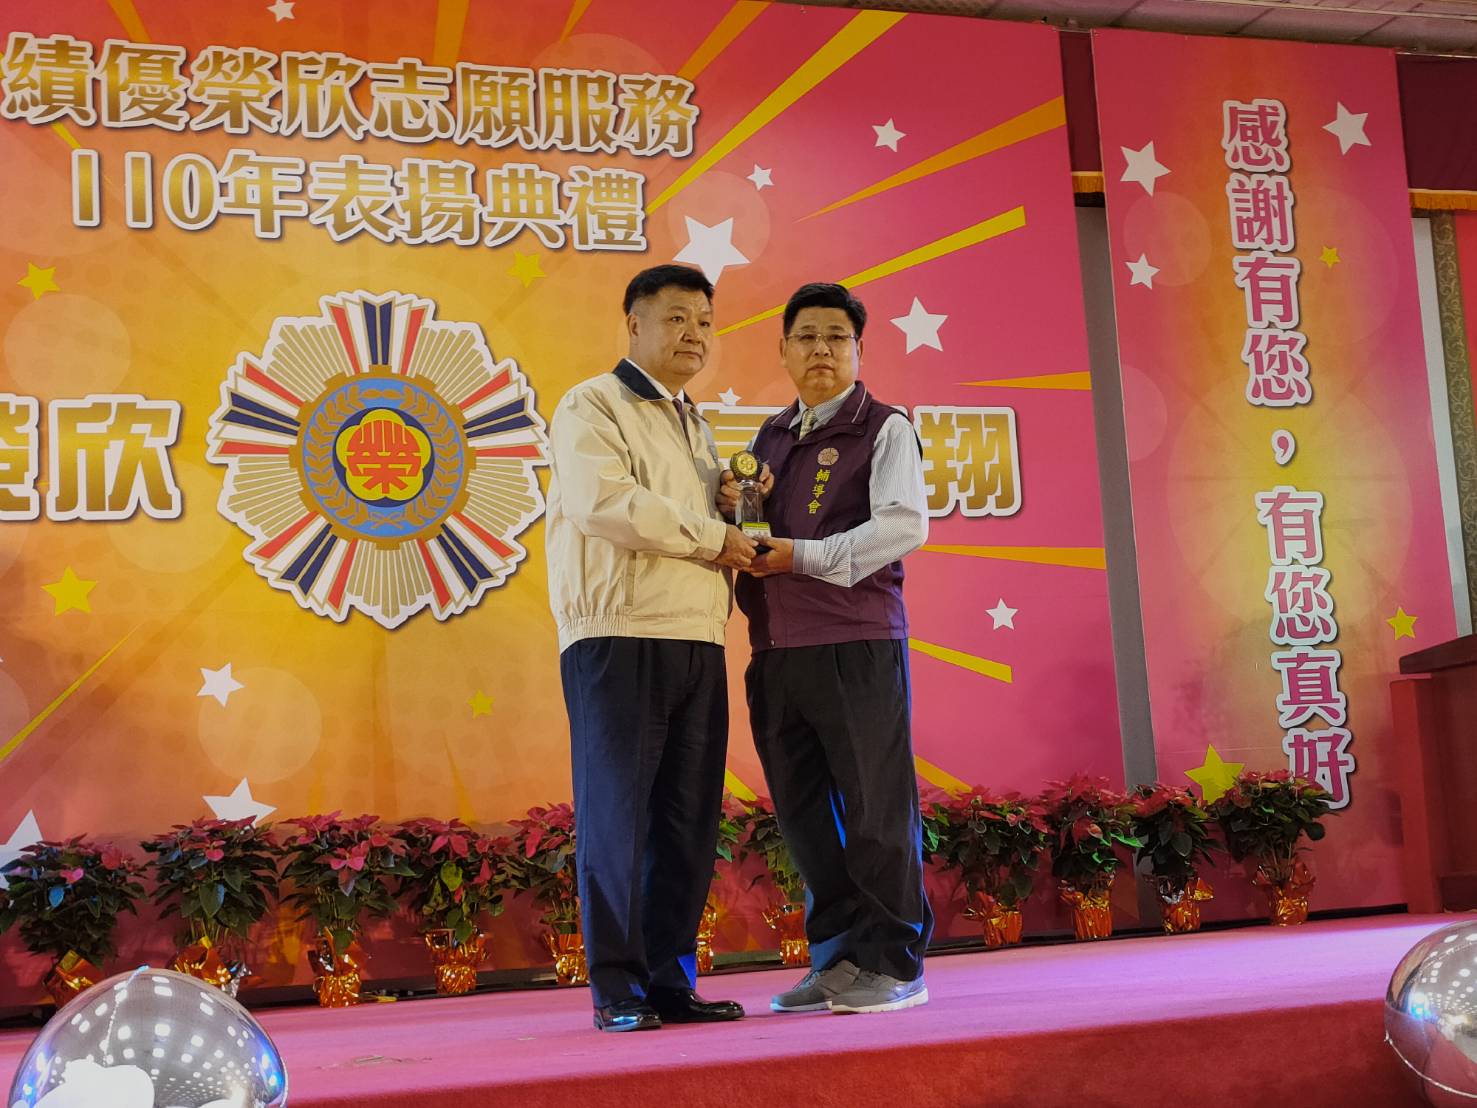 圖三 李副主任委員頒發獎座給本處績優服務組長蔡承坤先生